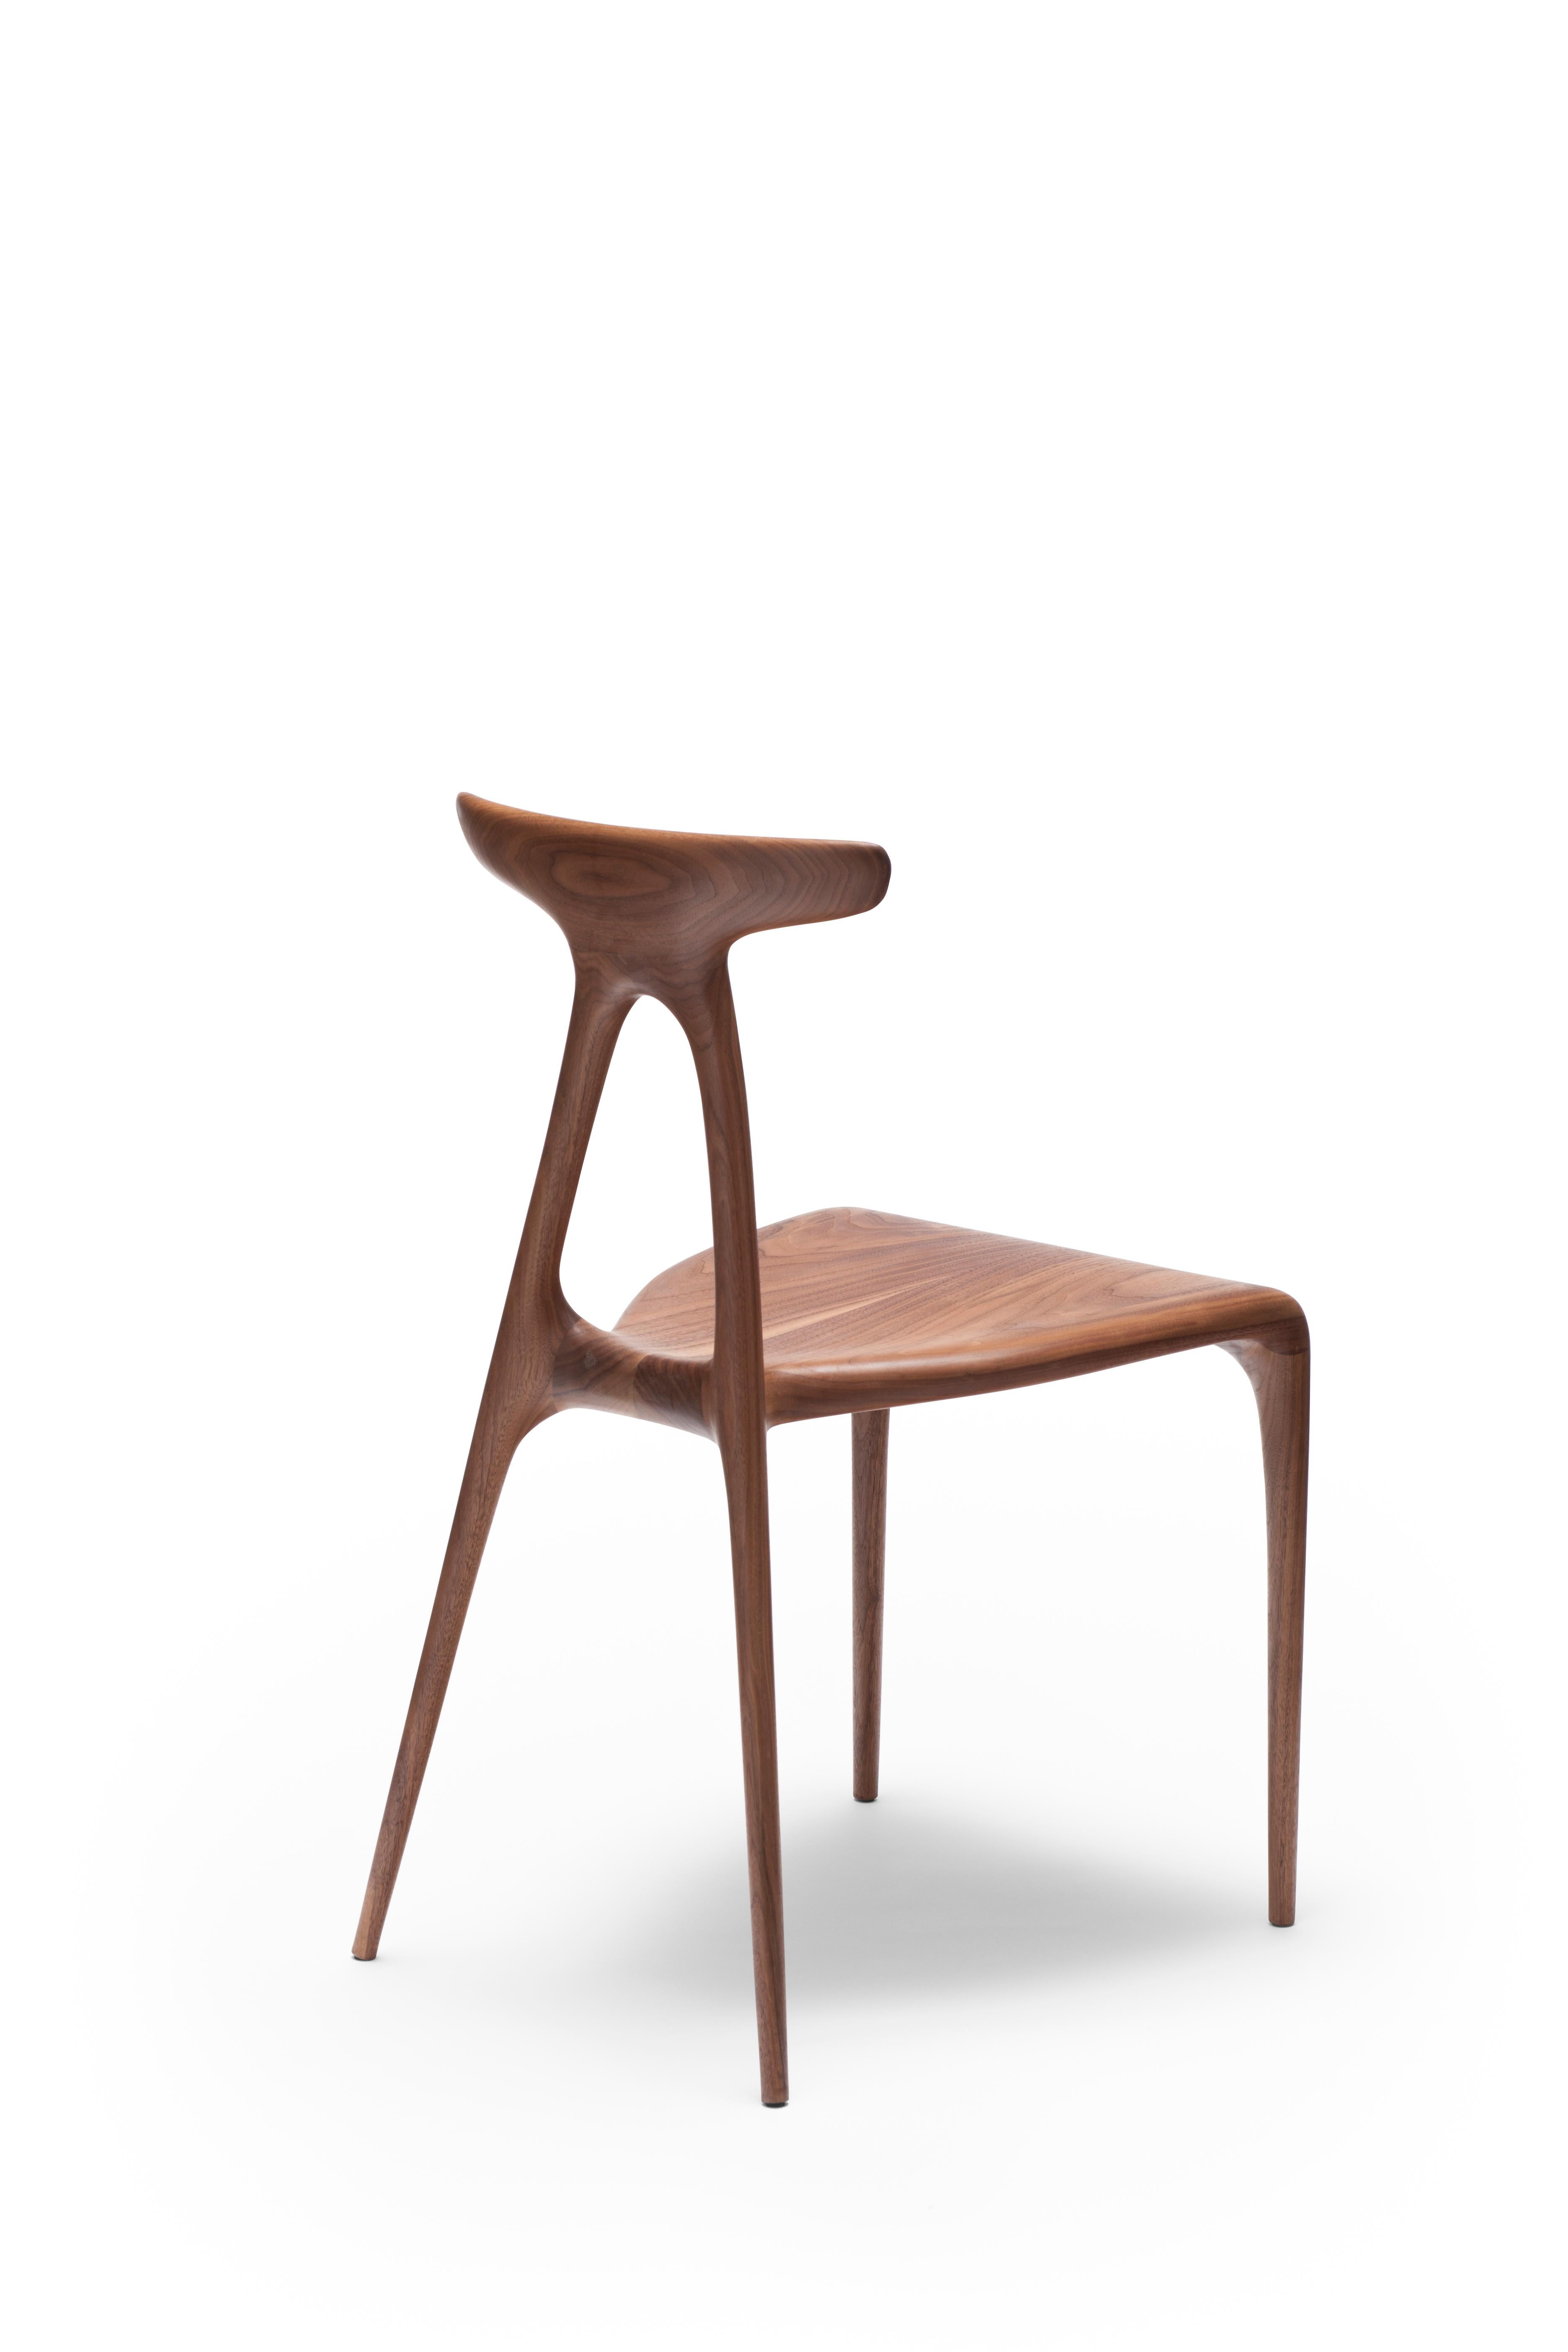 Une chaise empilable polyvalente contemporaine en bois massif, produite à l'aide des dernières technologies de production de meubles en bois façonné. Le design s'enorgueillit d'un geste architectural fort qui confère à la chaise sa force inhérente :